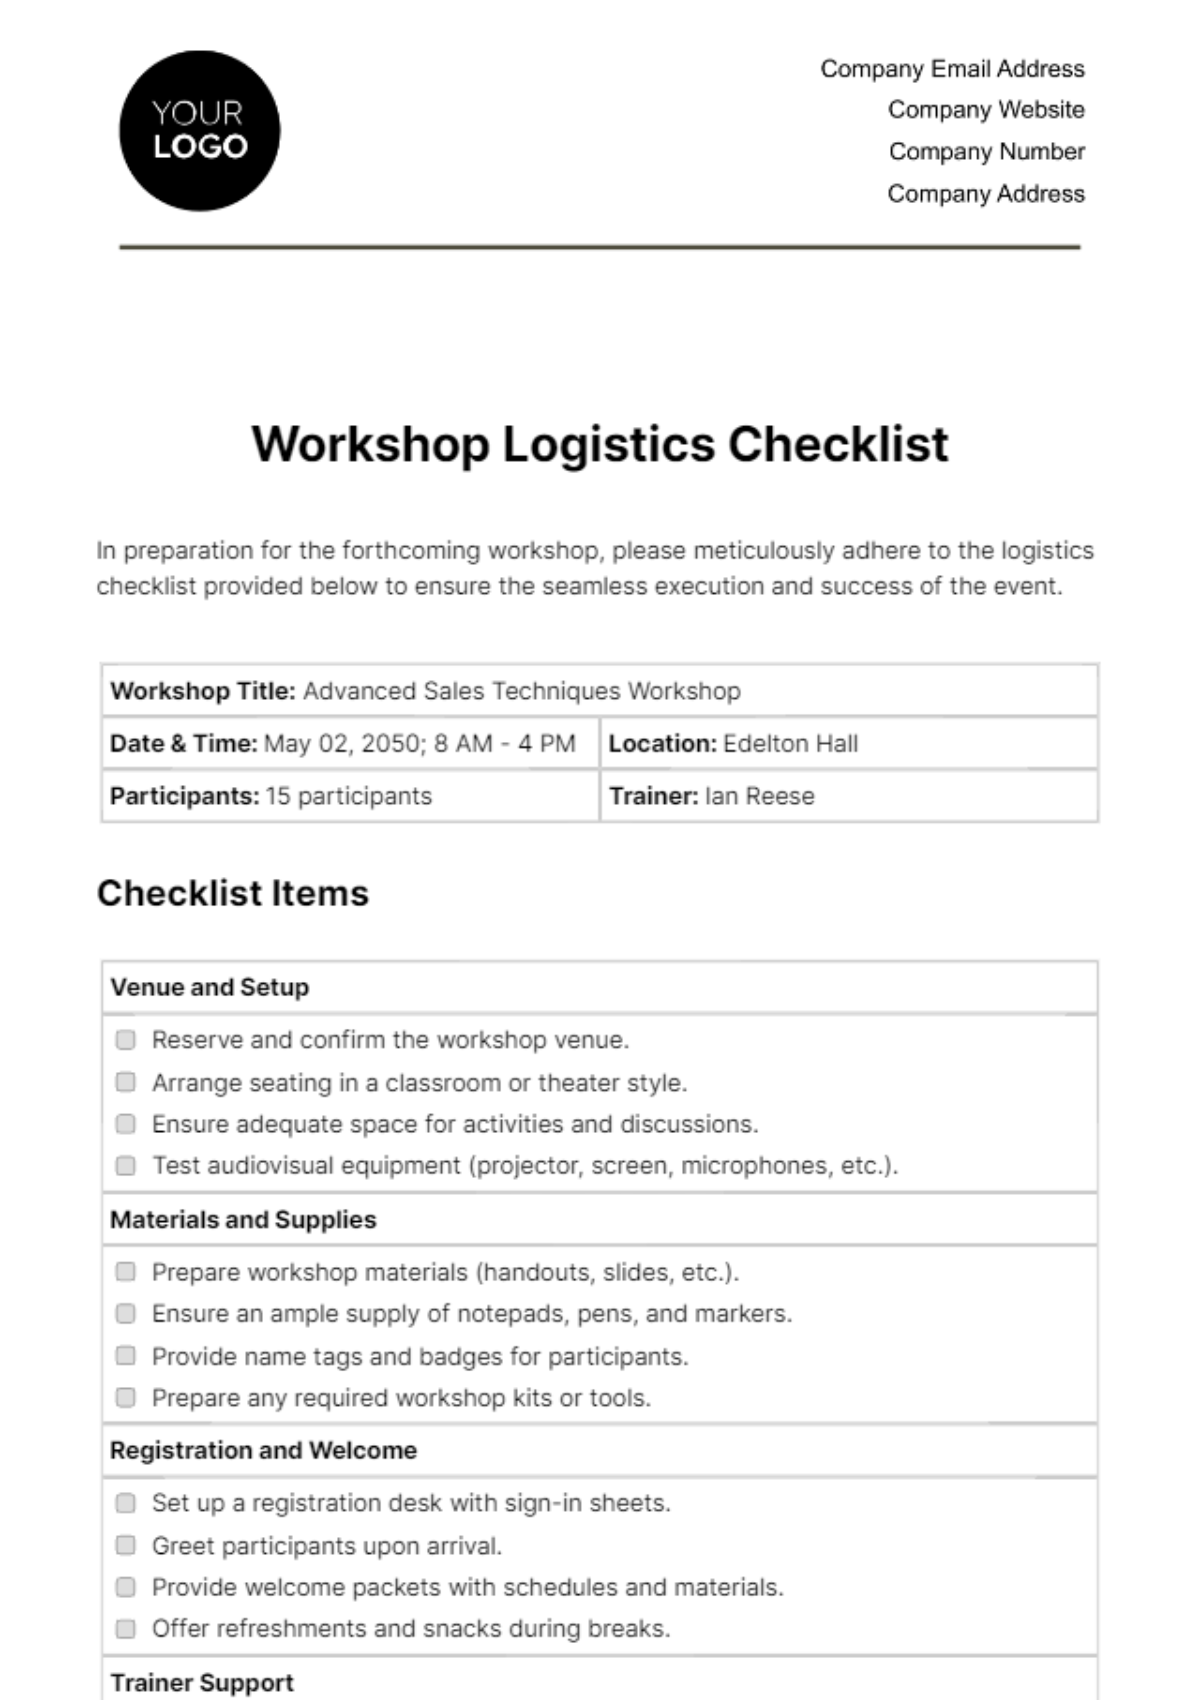 Free Workshop Logistics Checklist HR Template